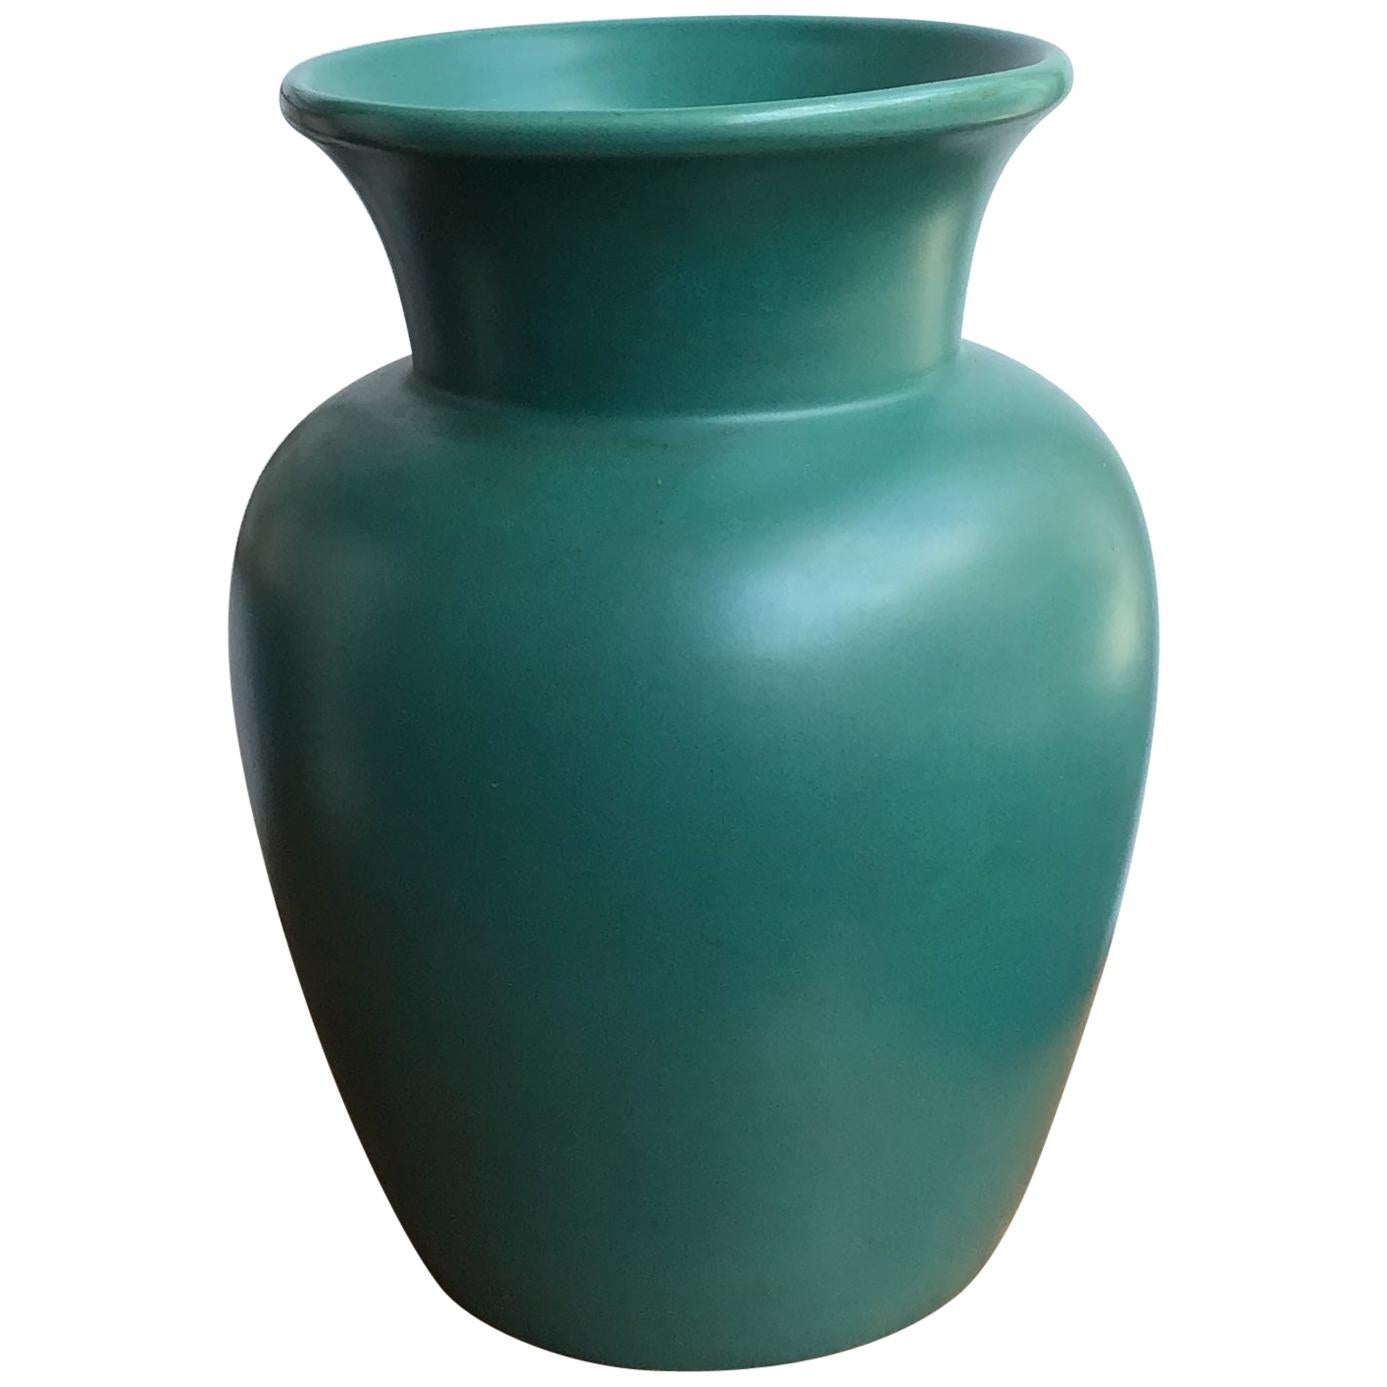 Richard Ginori Giovanni Gariboldi Vase Green Ceramic, 1950, Italy